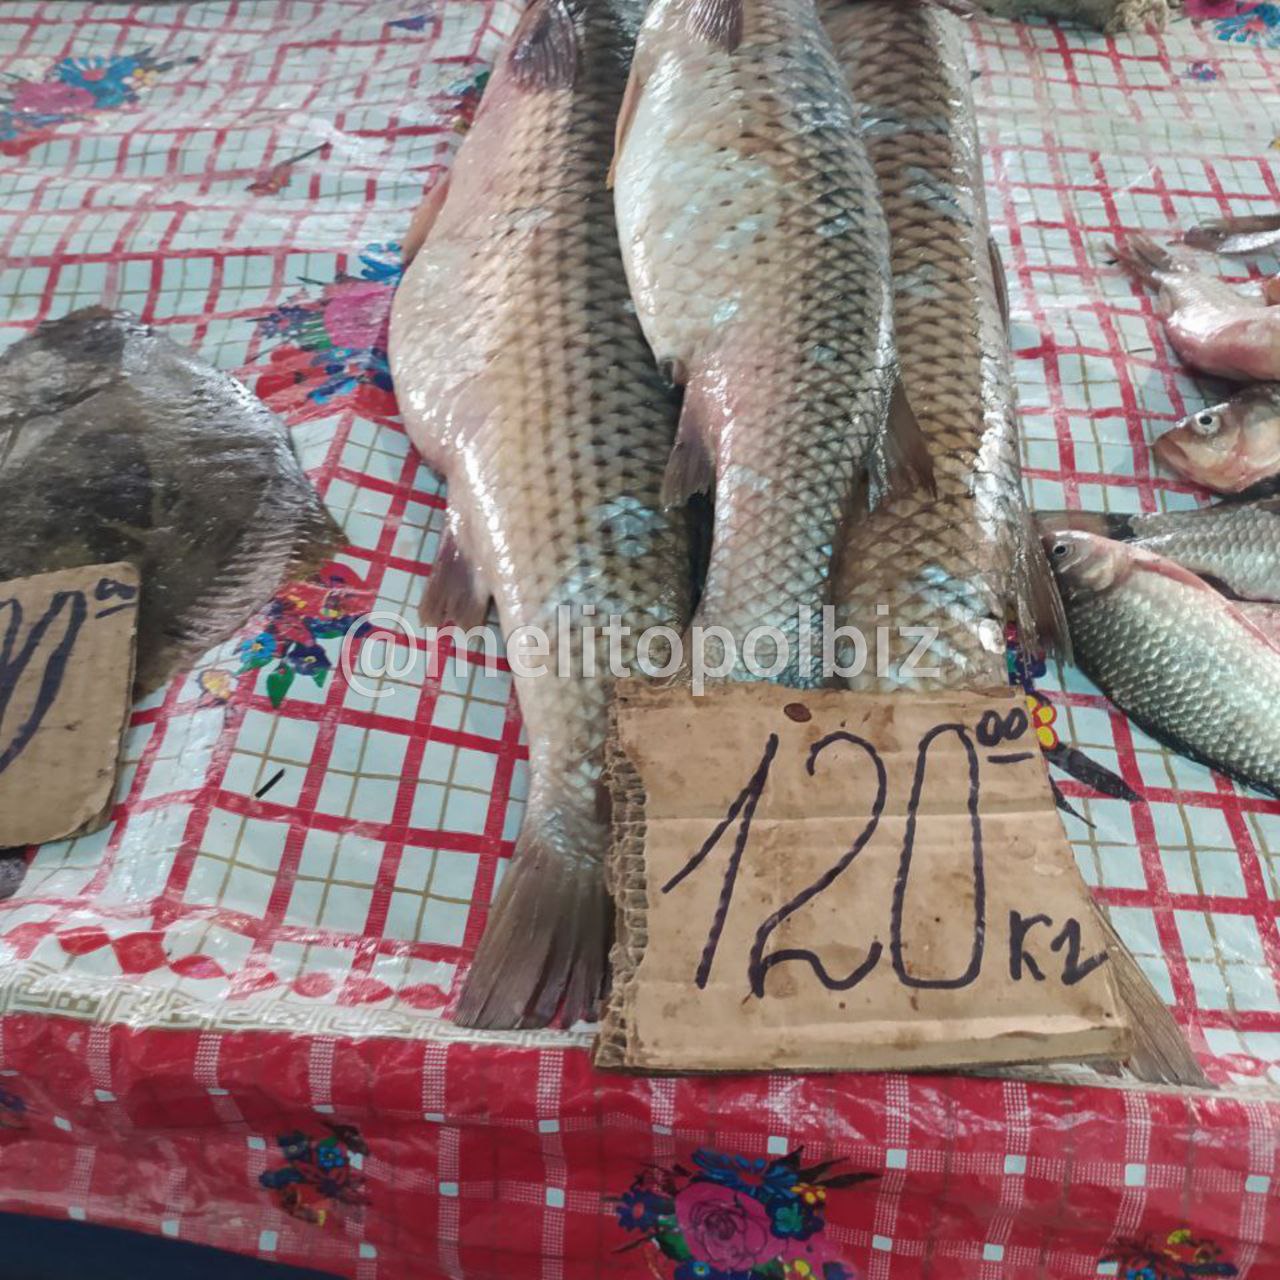 Сколько стоит на рынке в Мелитополе свежая рыба 2